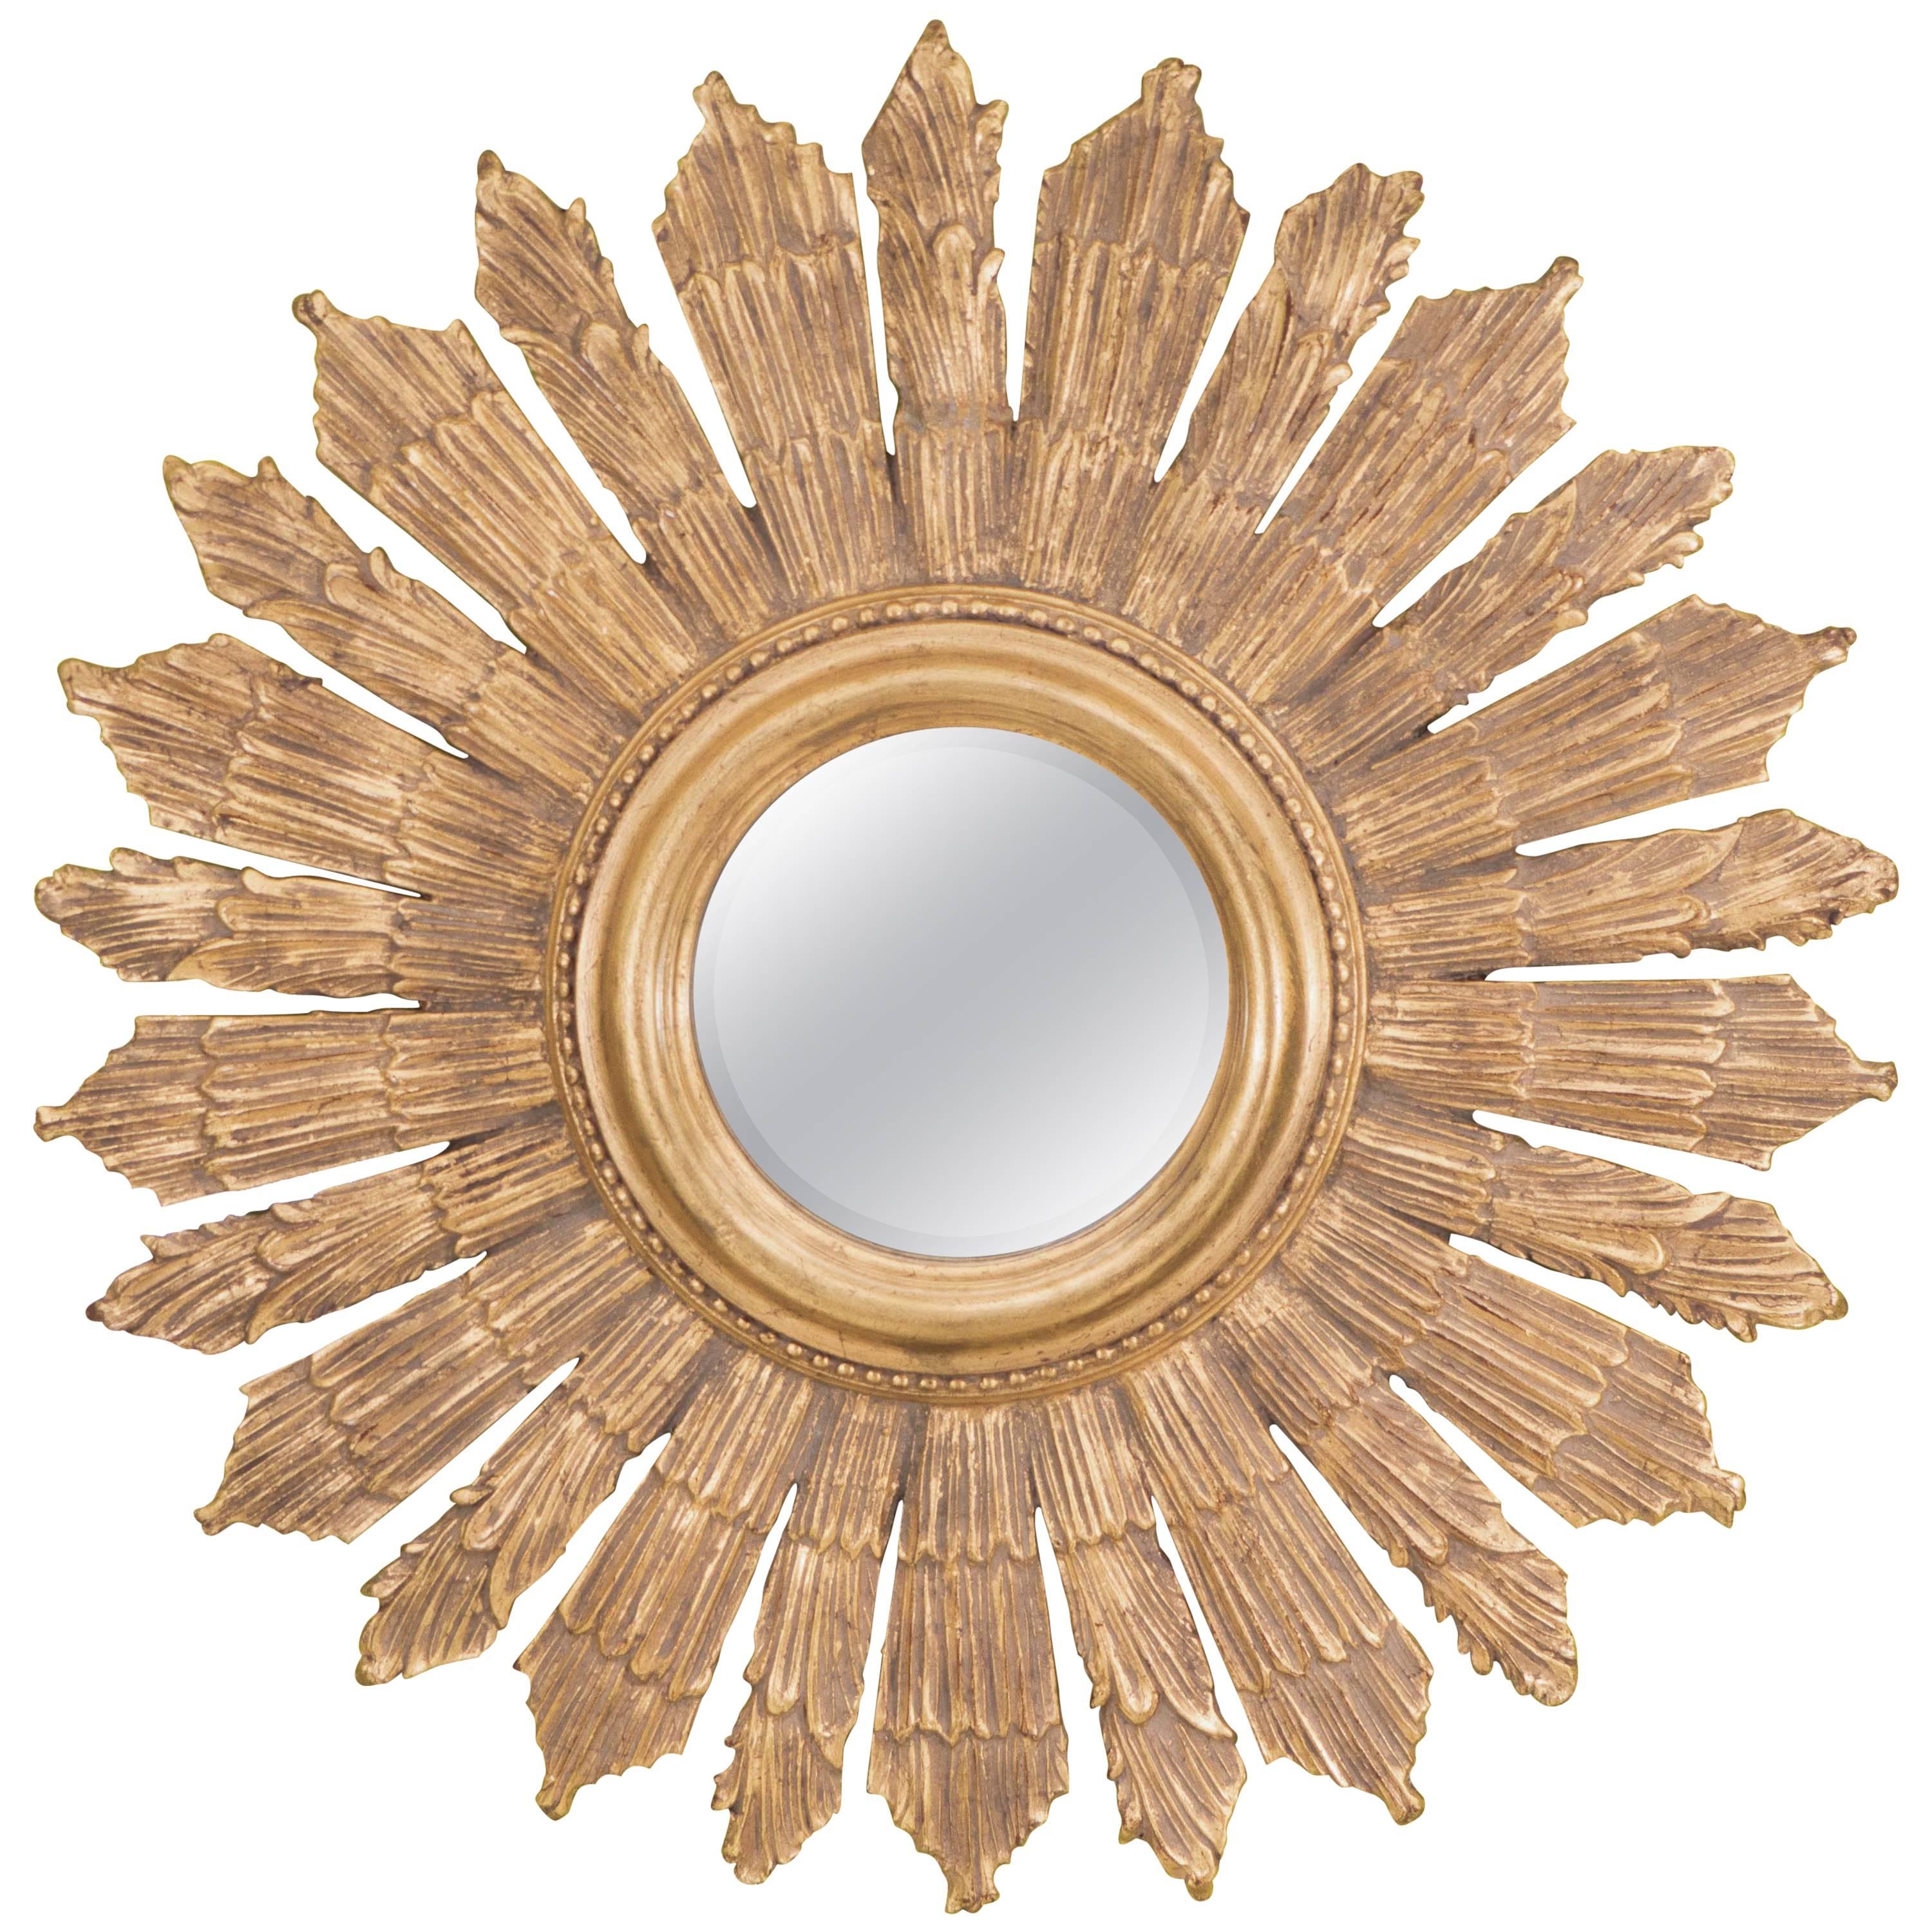 A Sunburst Mirror